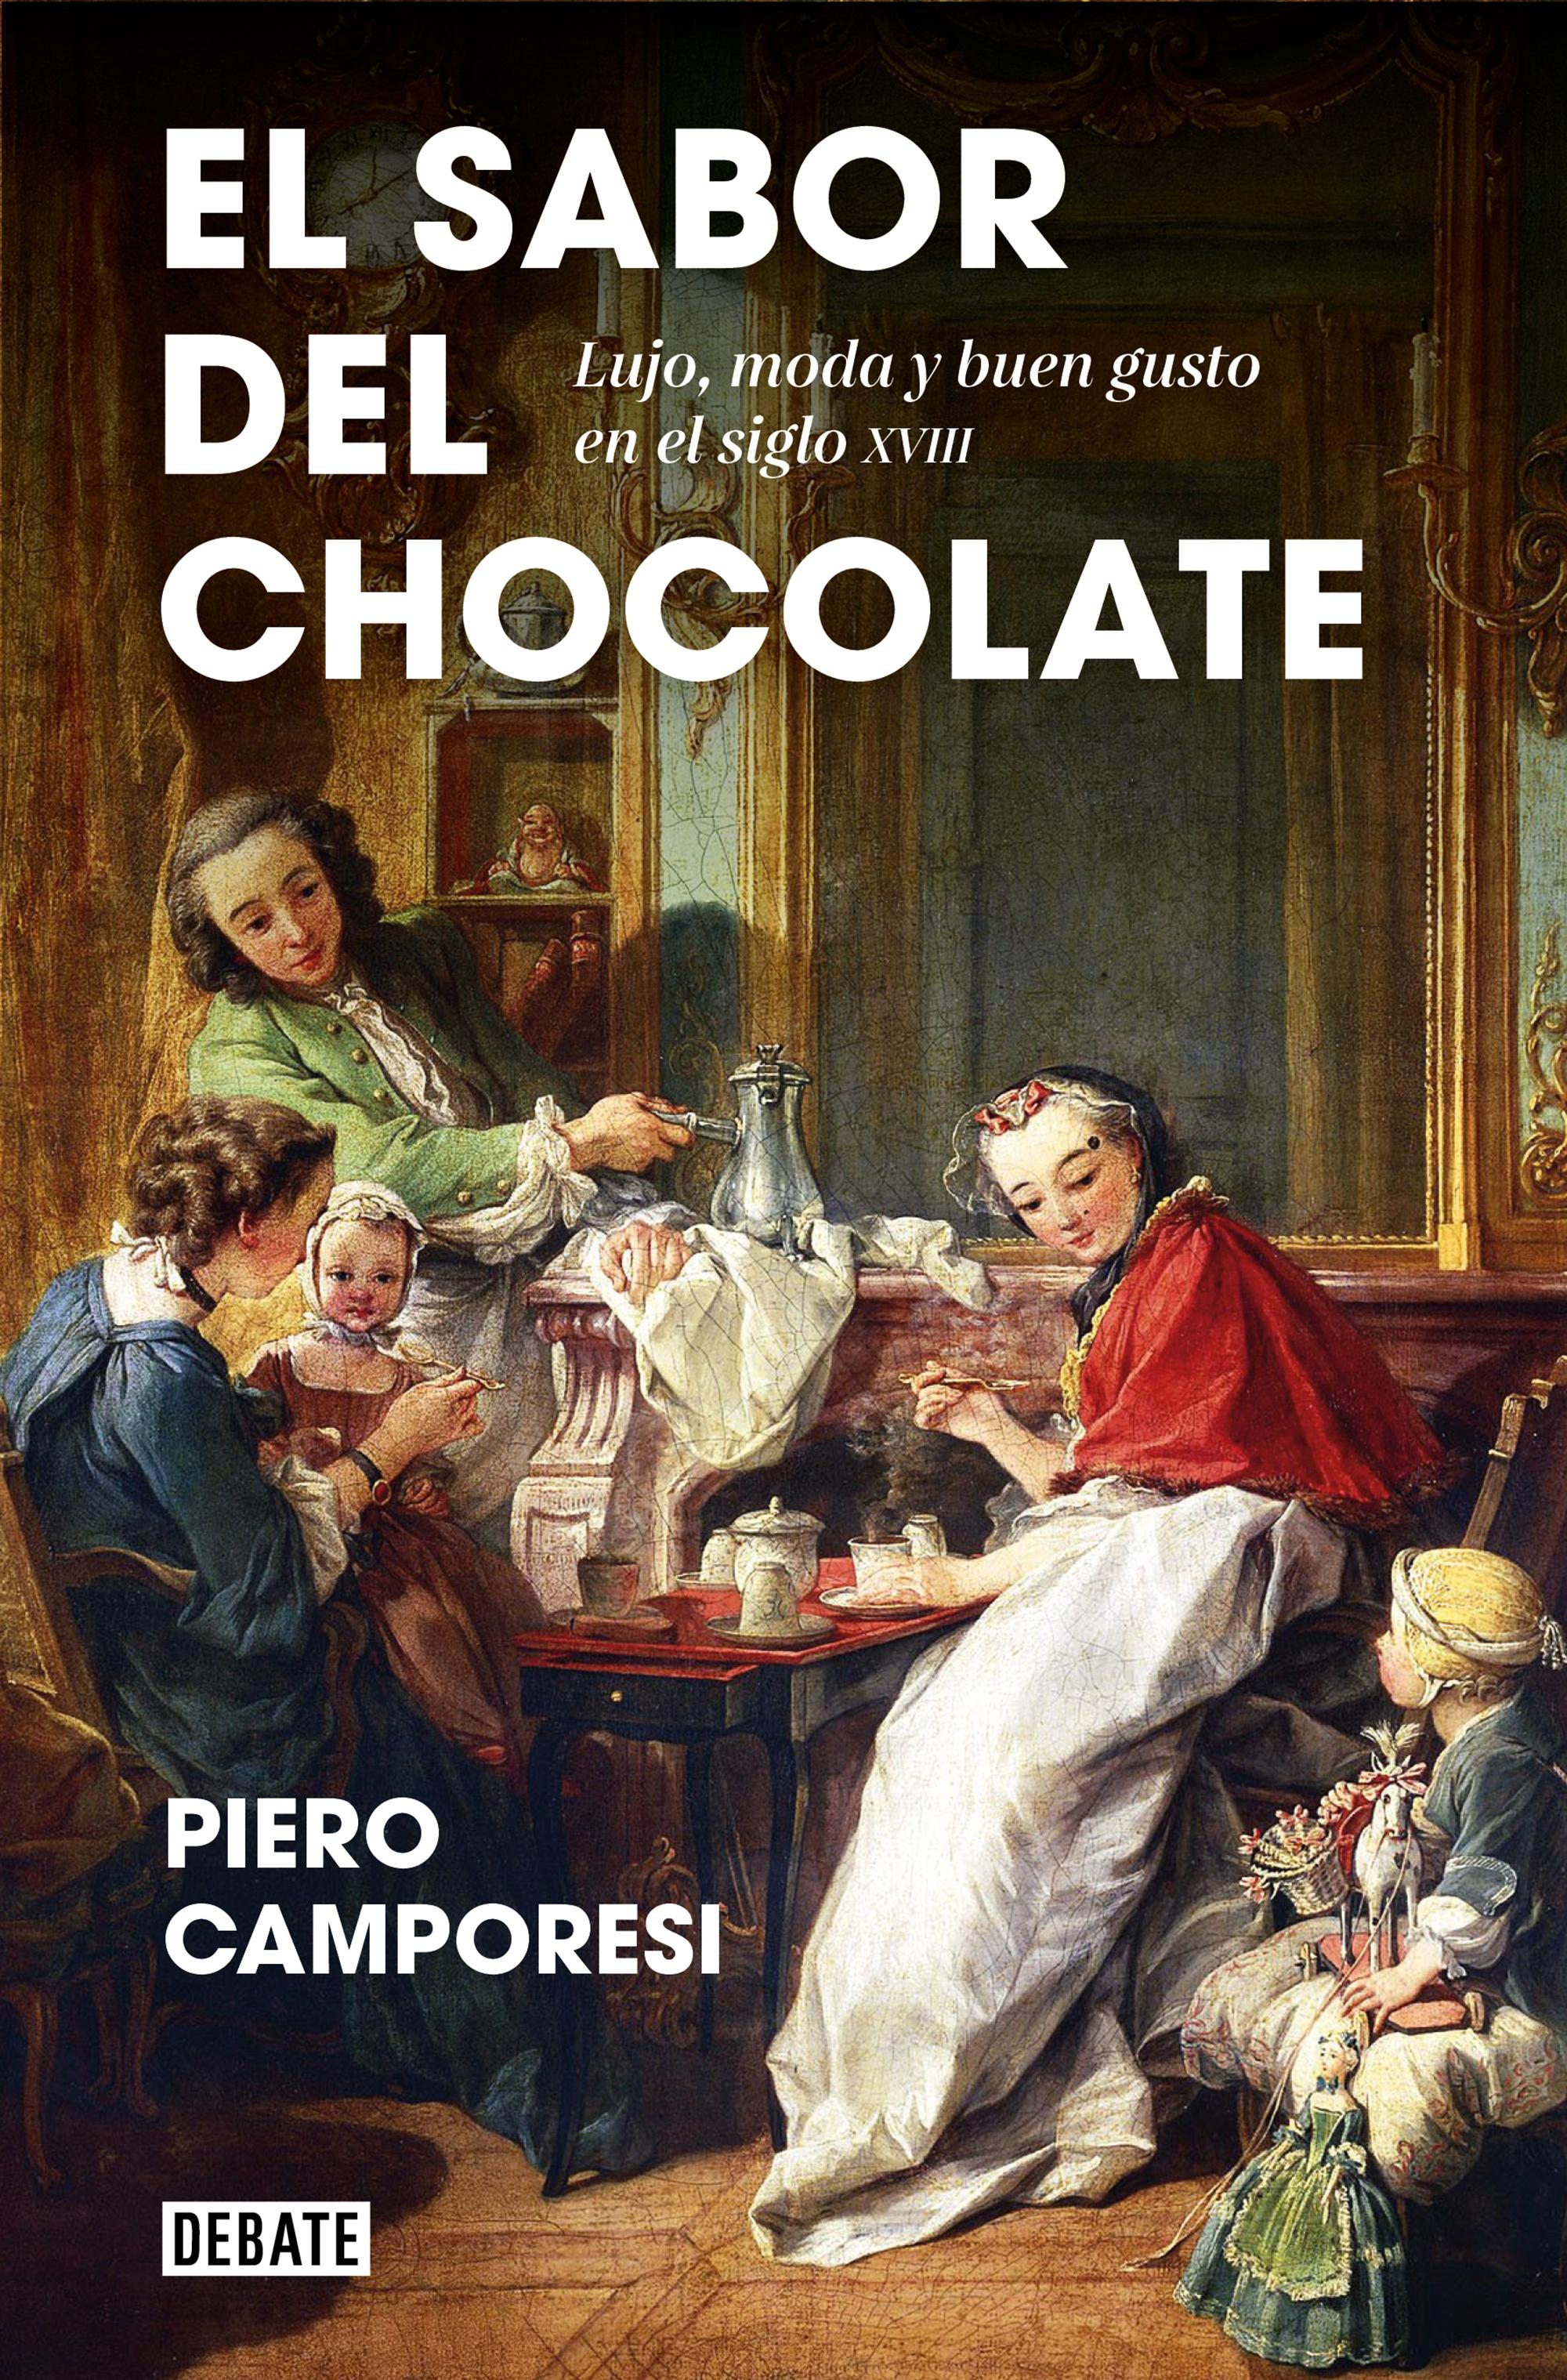 Sabor del chocolate, El "Lujo, moda y buen gusto en el siglo XVIII"